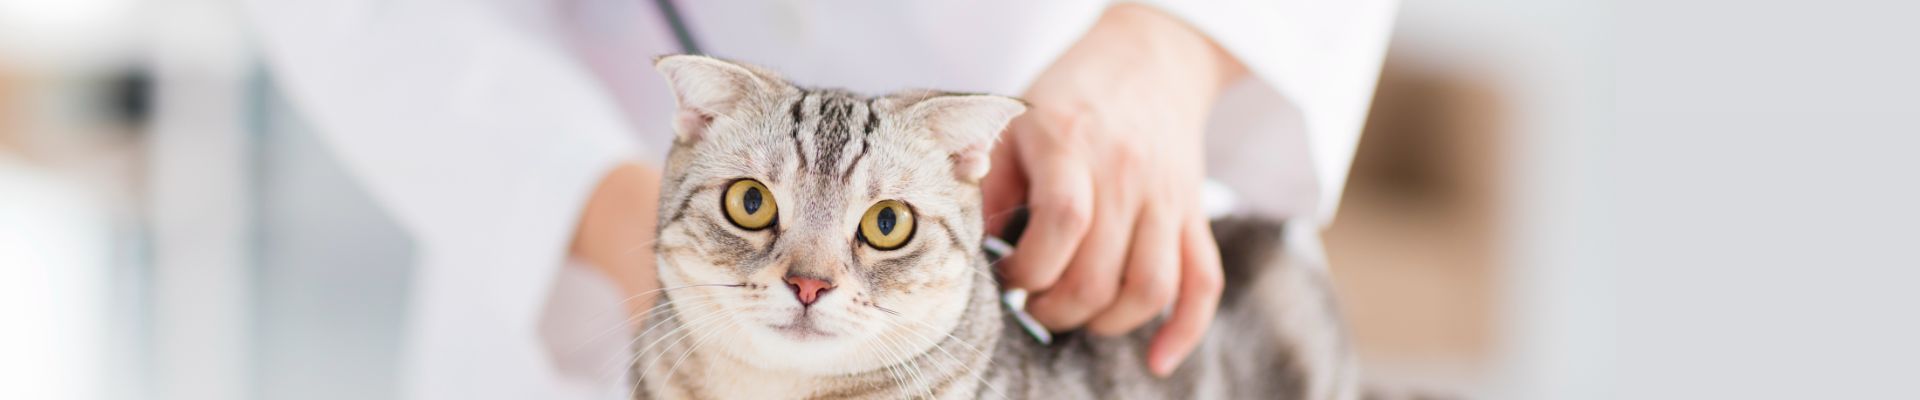 estetoscopio de veterinario y gato gris